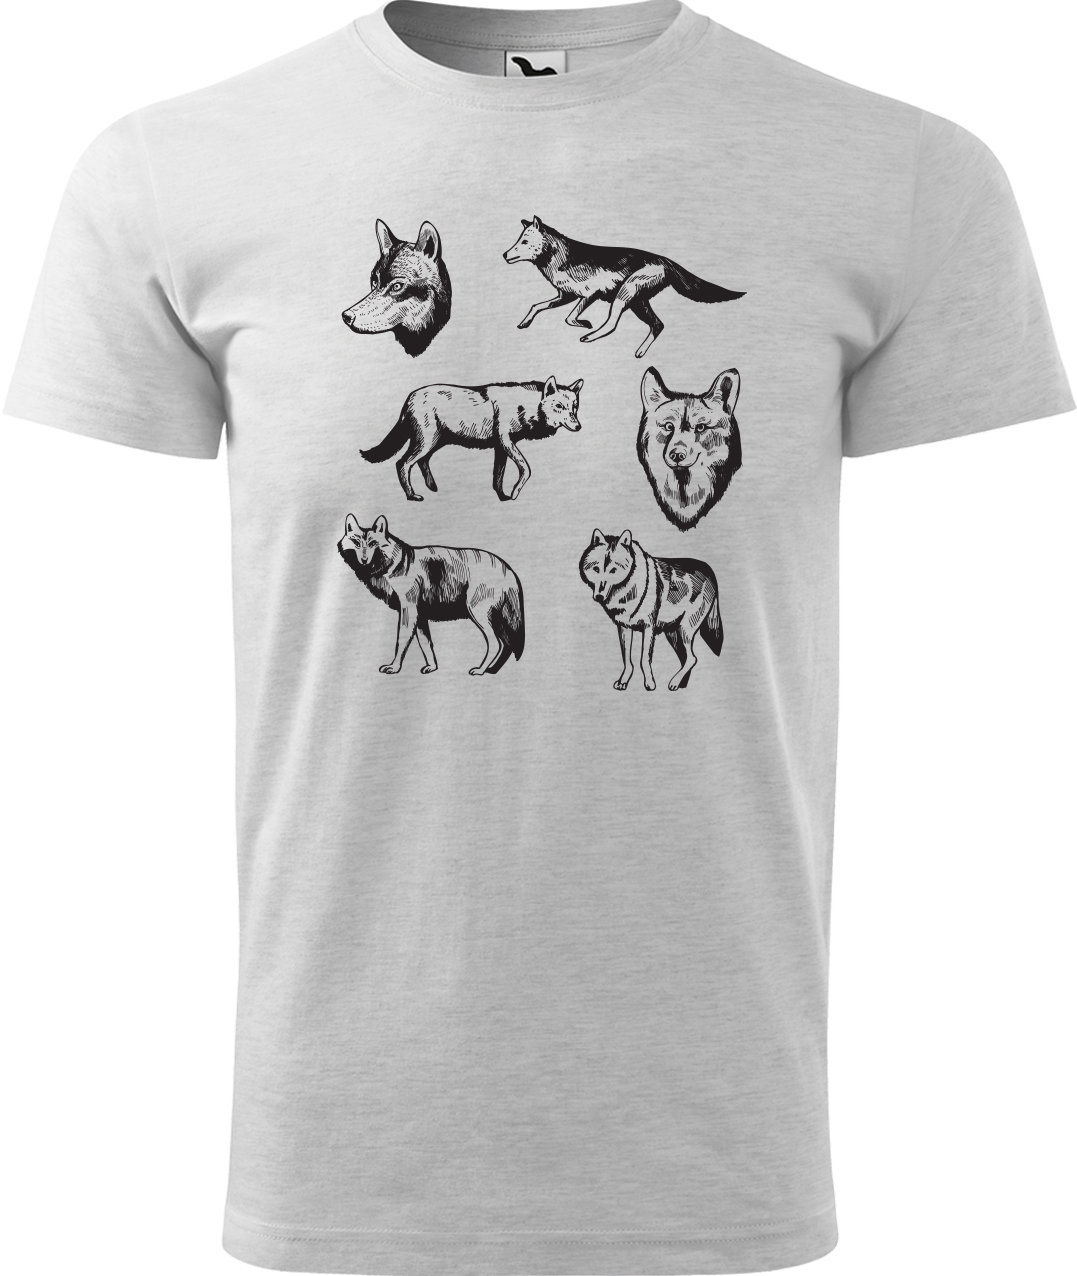 Pánské tričko s vlkem - Vlci Velikost: L, Barva: Světle šedý melír (03), Střih: pánský